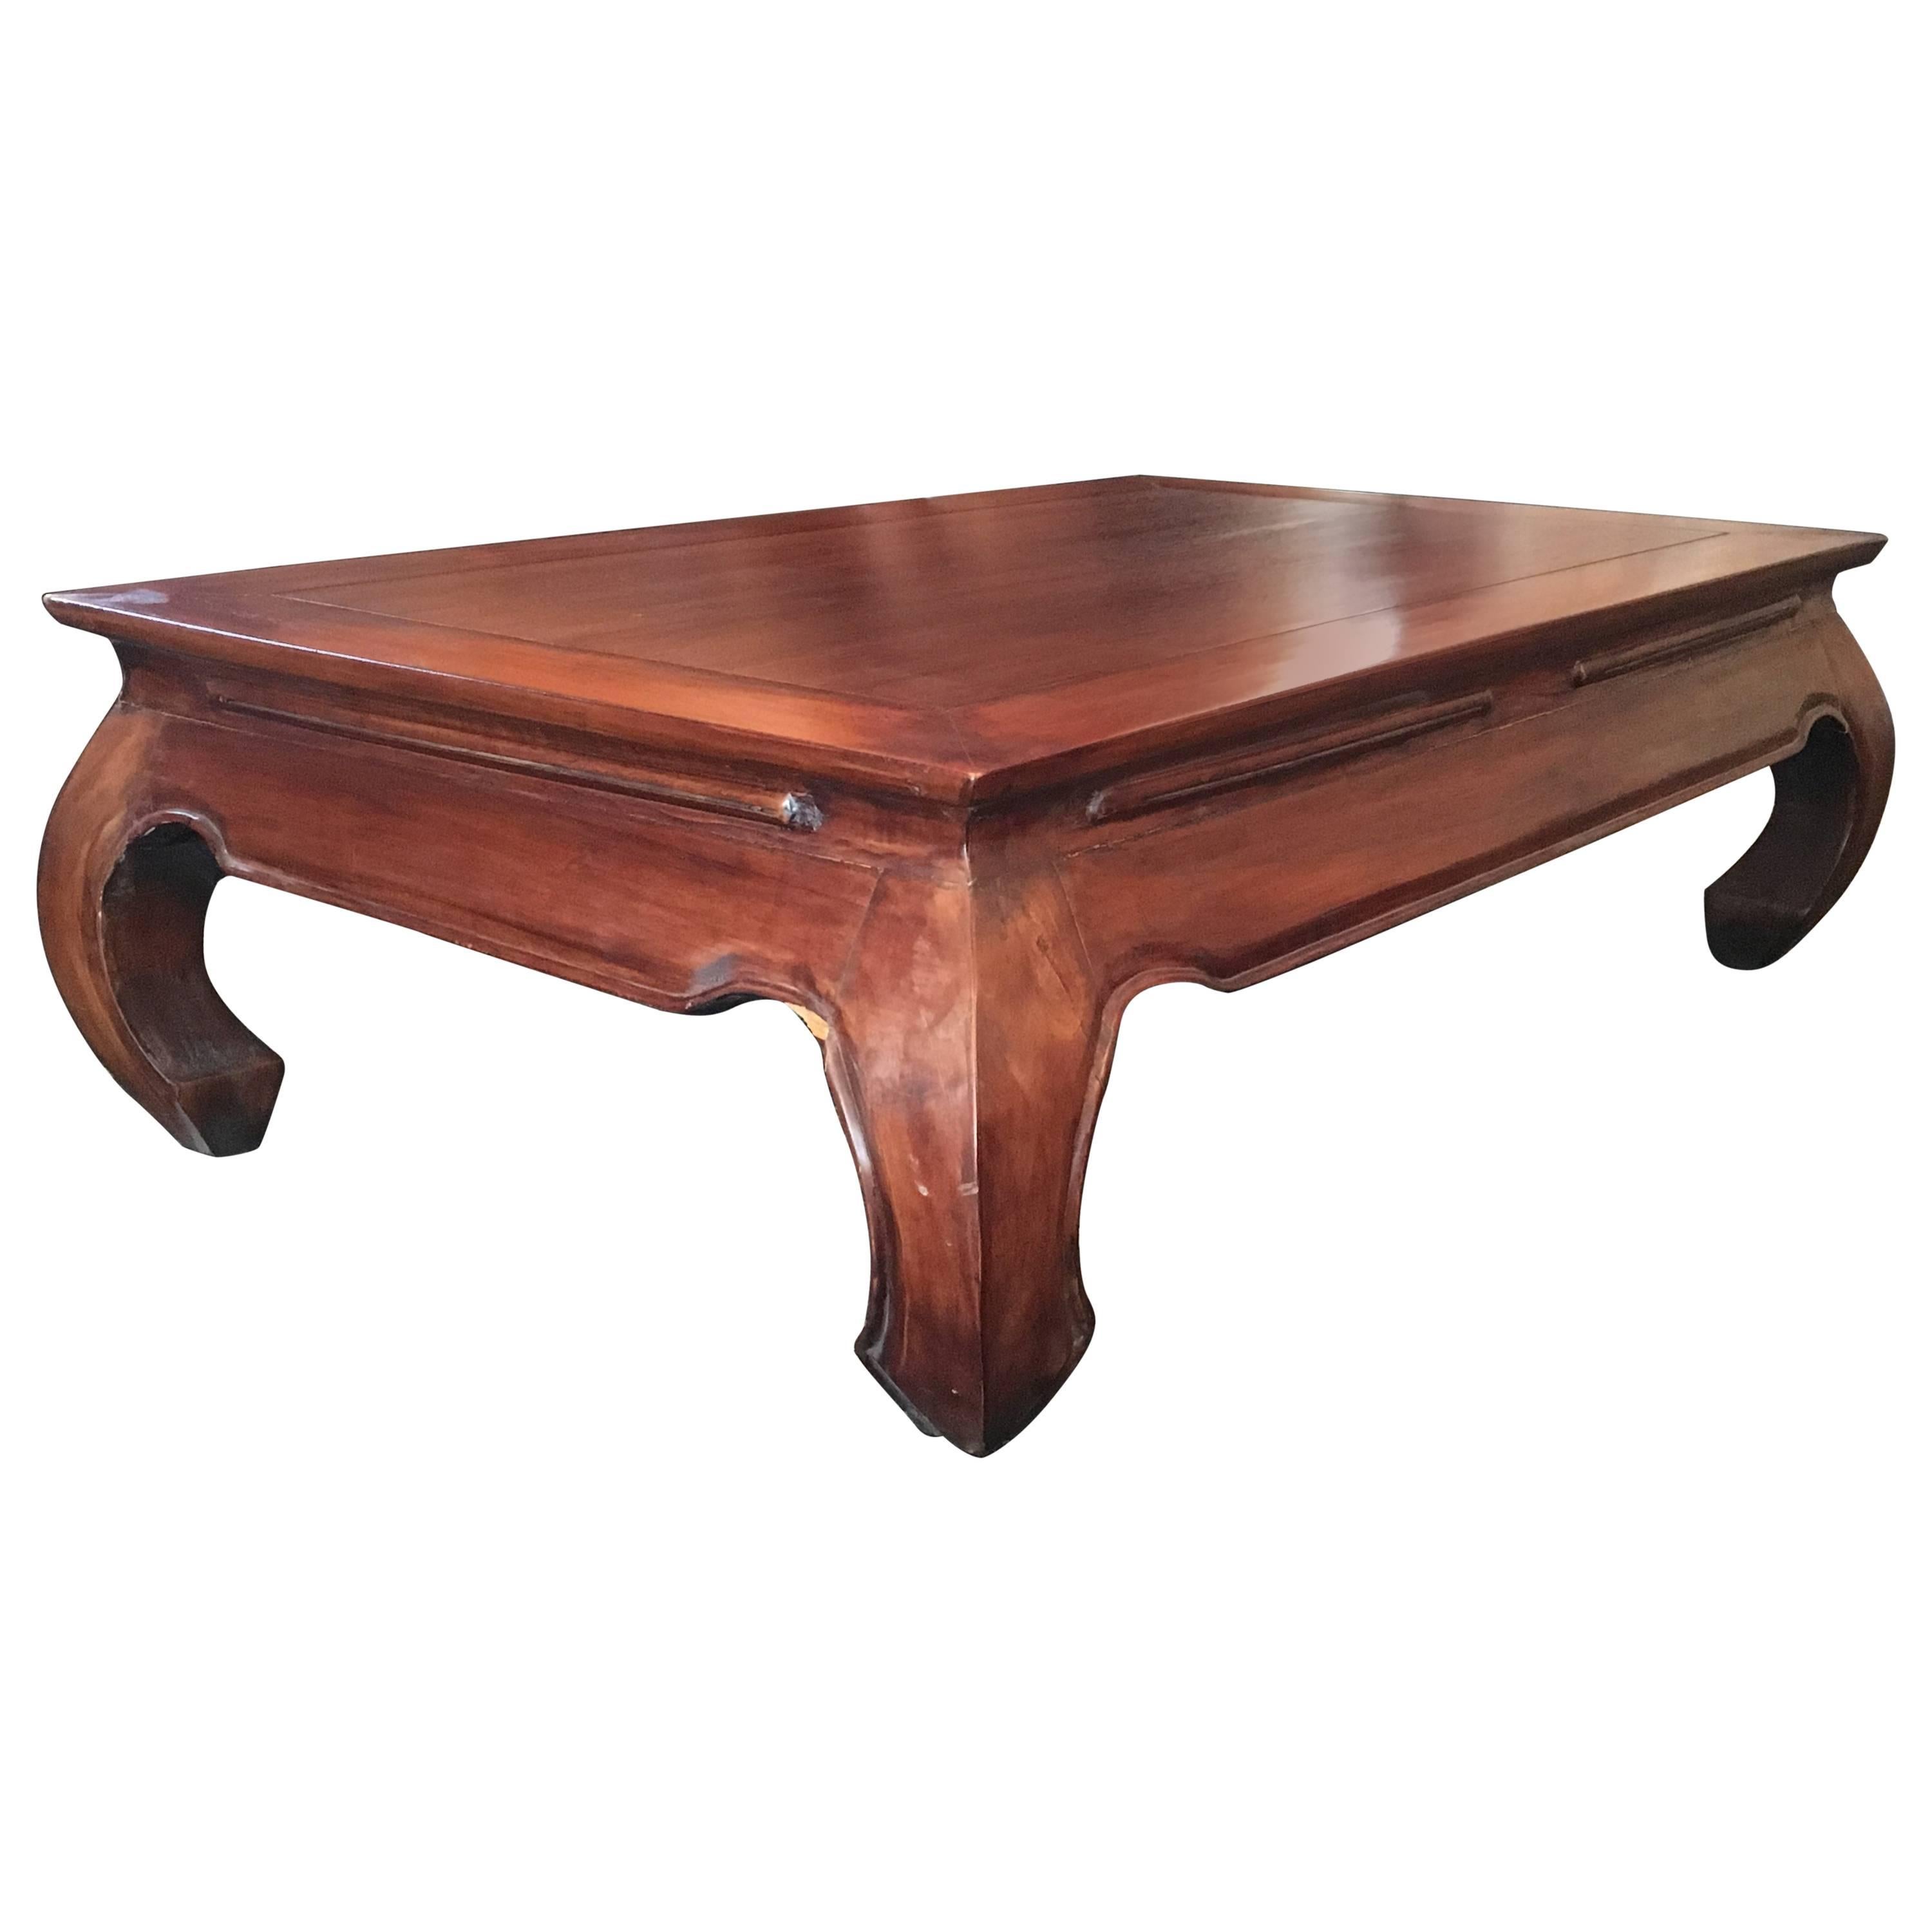 Niedriger Tisch des 20. Jahrhunderts aus exotischem Holz